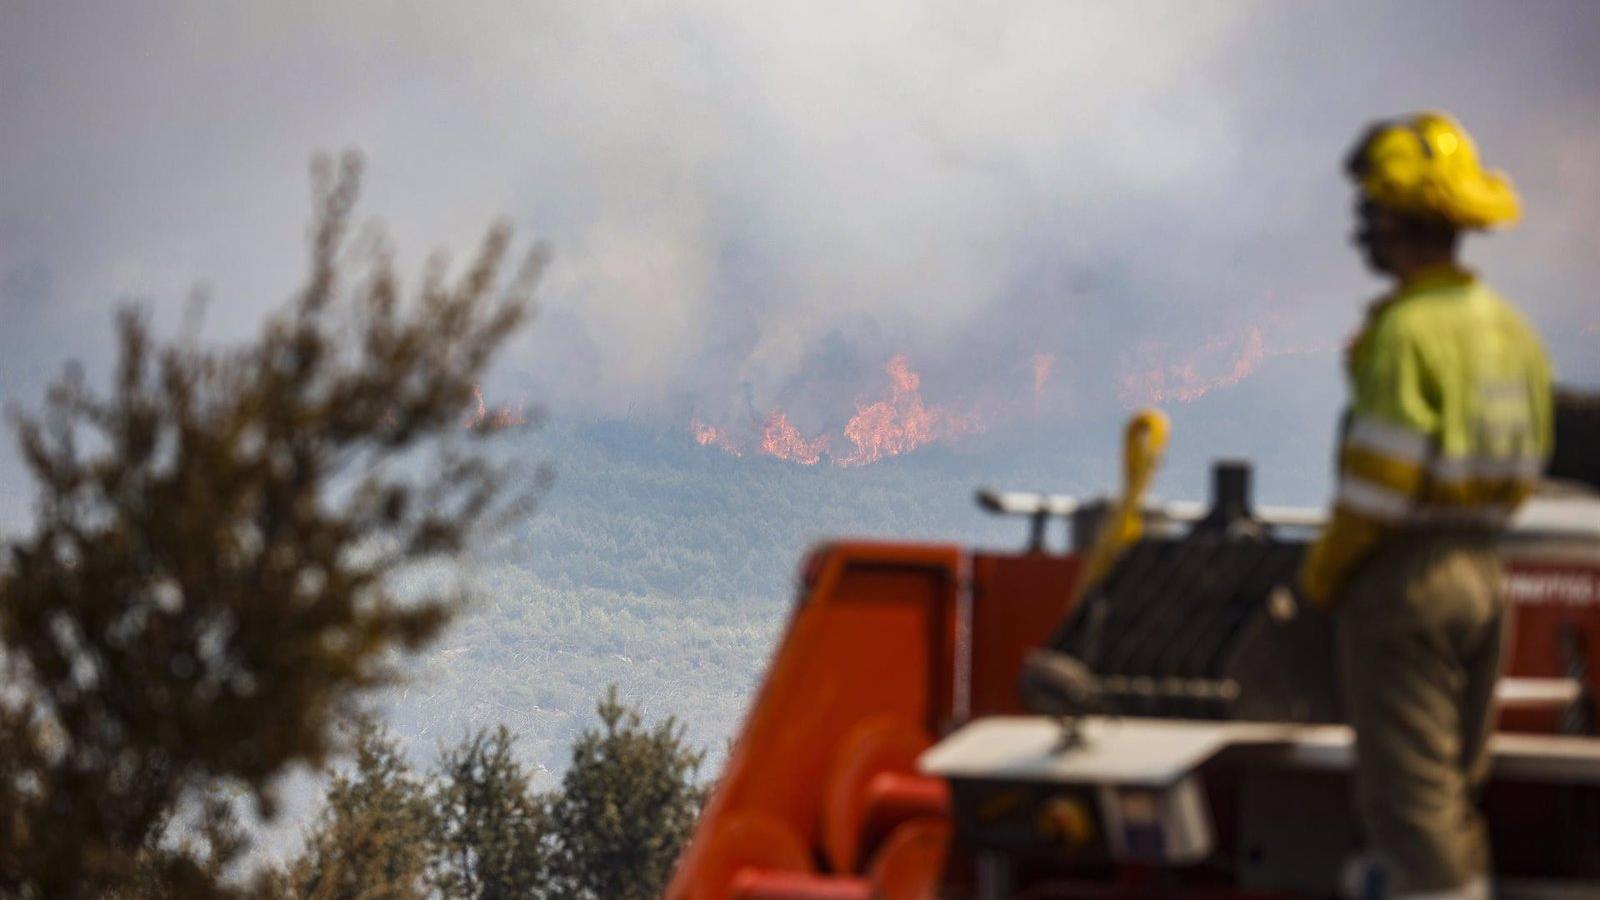 La región de Madrid recibirá ayudas del Gobierno central por los incendios forestales en Aranjuez y Collado Mediano